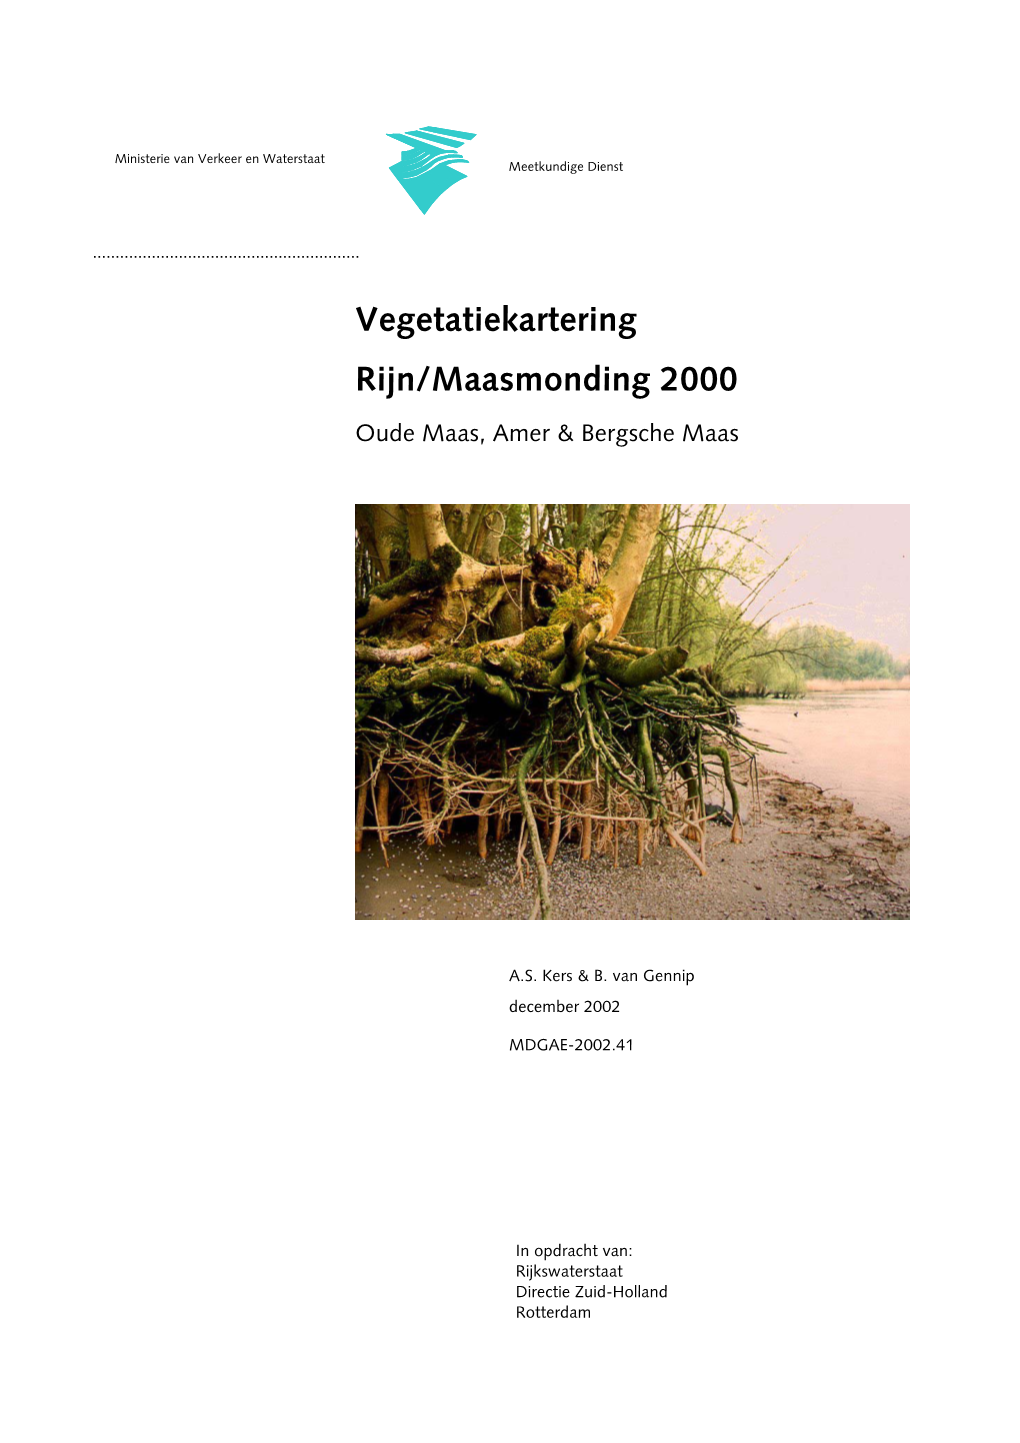 Vegetatiekartering Rijn/Maasmonding 2000